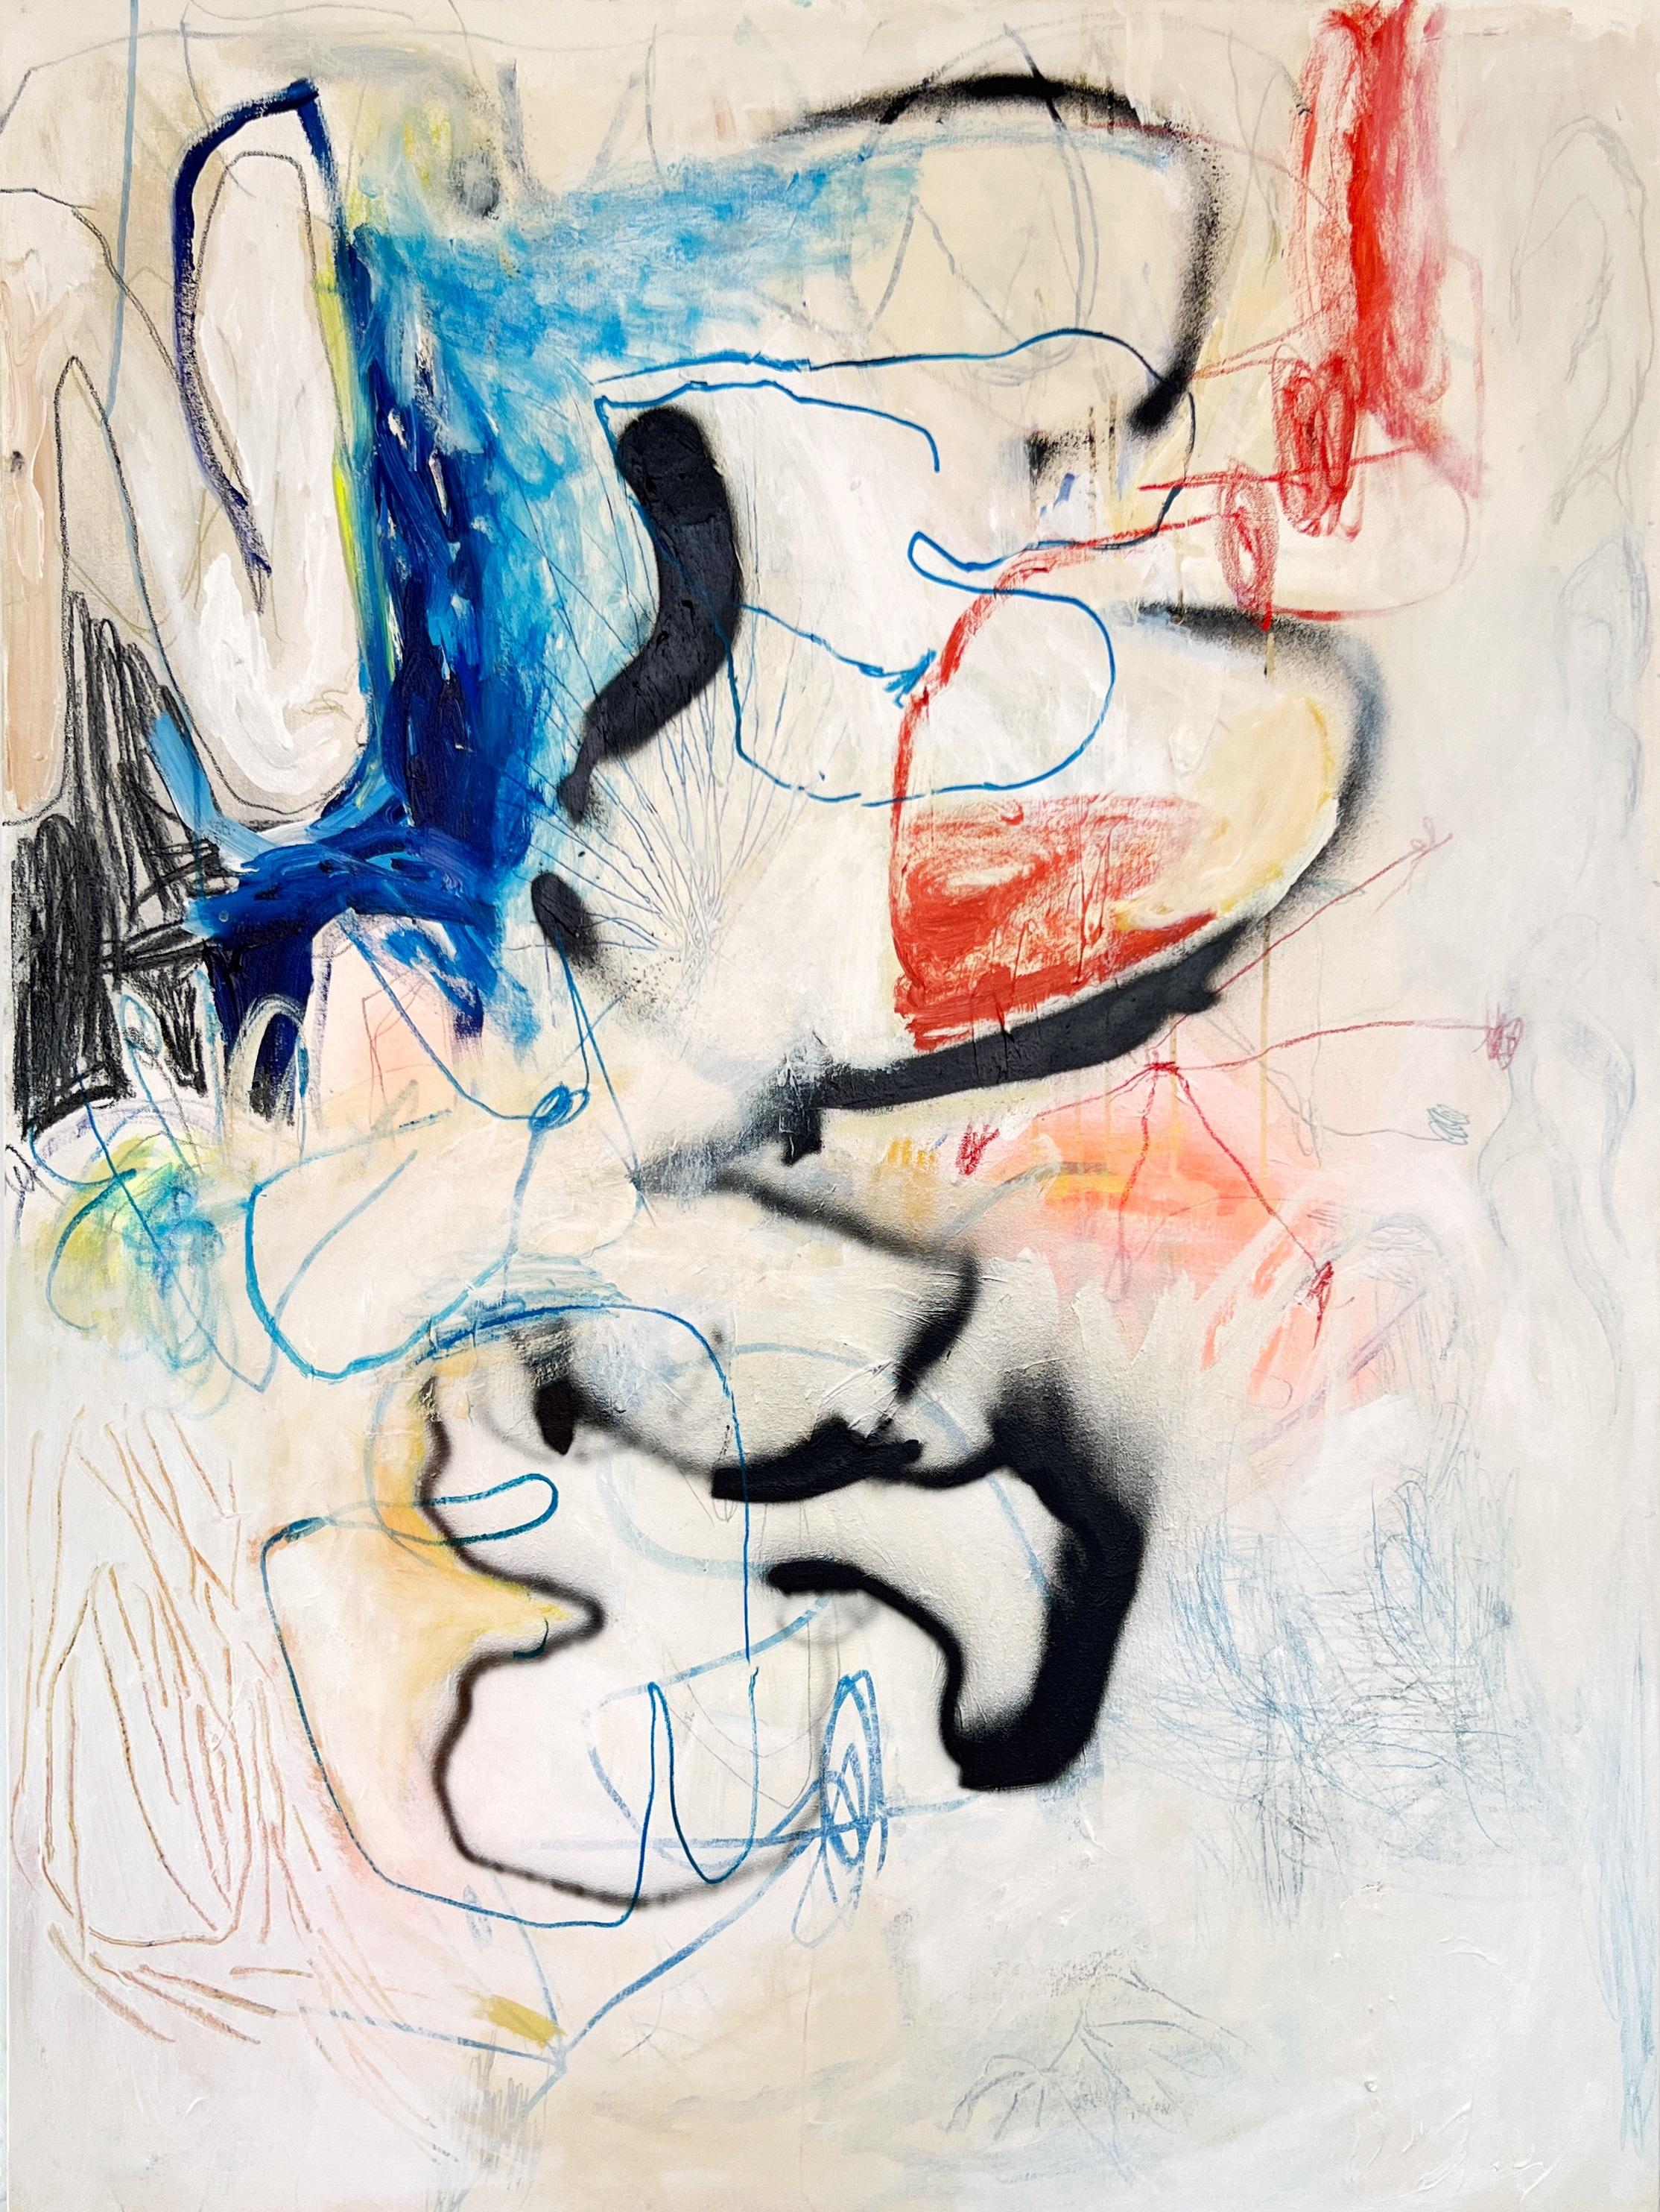 Sophie Crichton est une peintre abstraite originaire de Toronto (née en 1993), qui vit et travaille actuellement à Barcelone. Ses travaux sont une manifestation visuelle de son expérience, de son interaction avec les environnements urbains et d'une